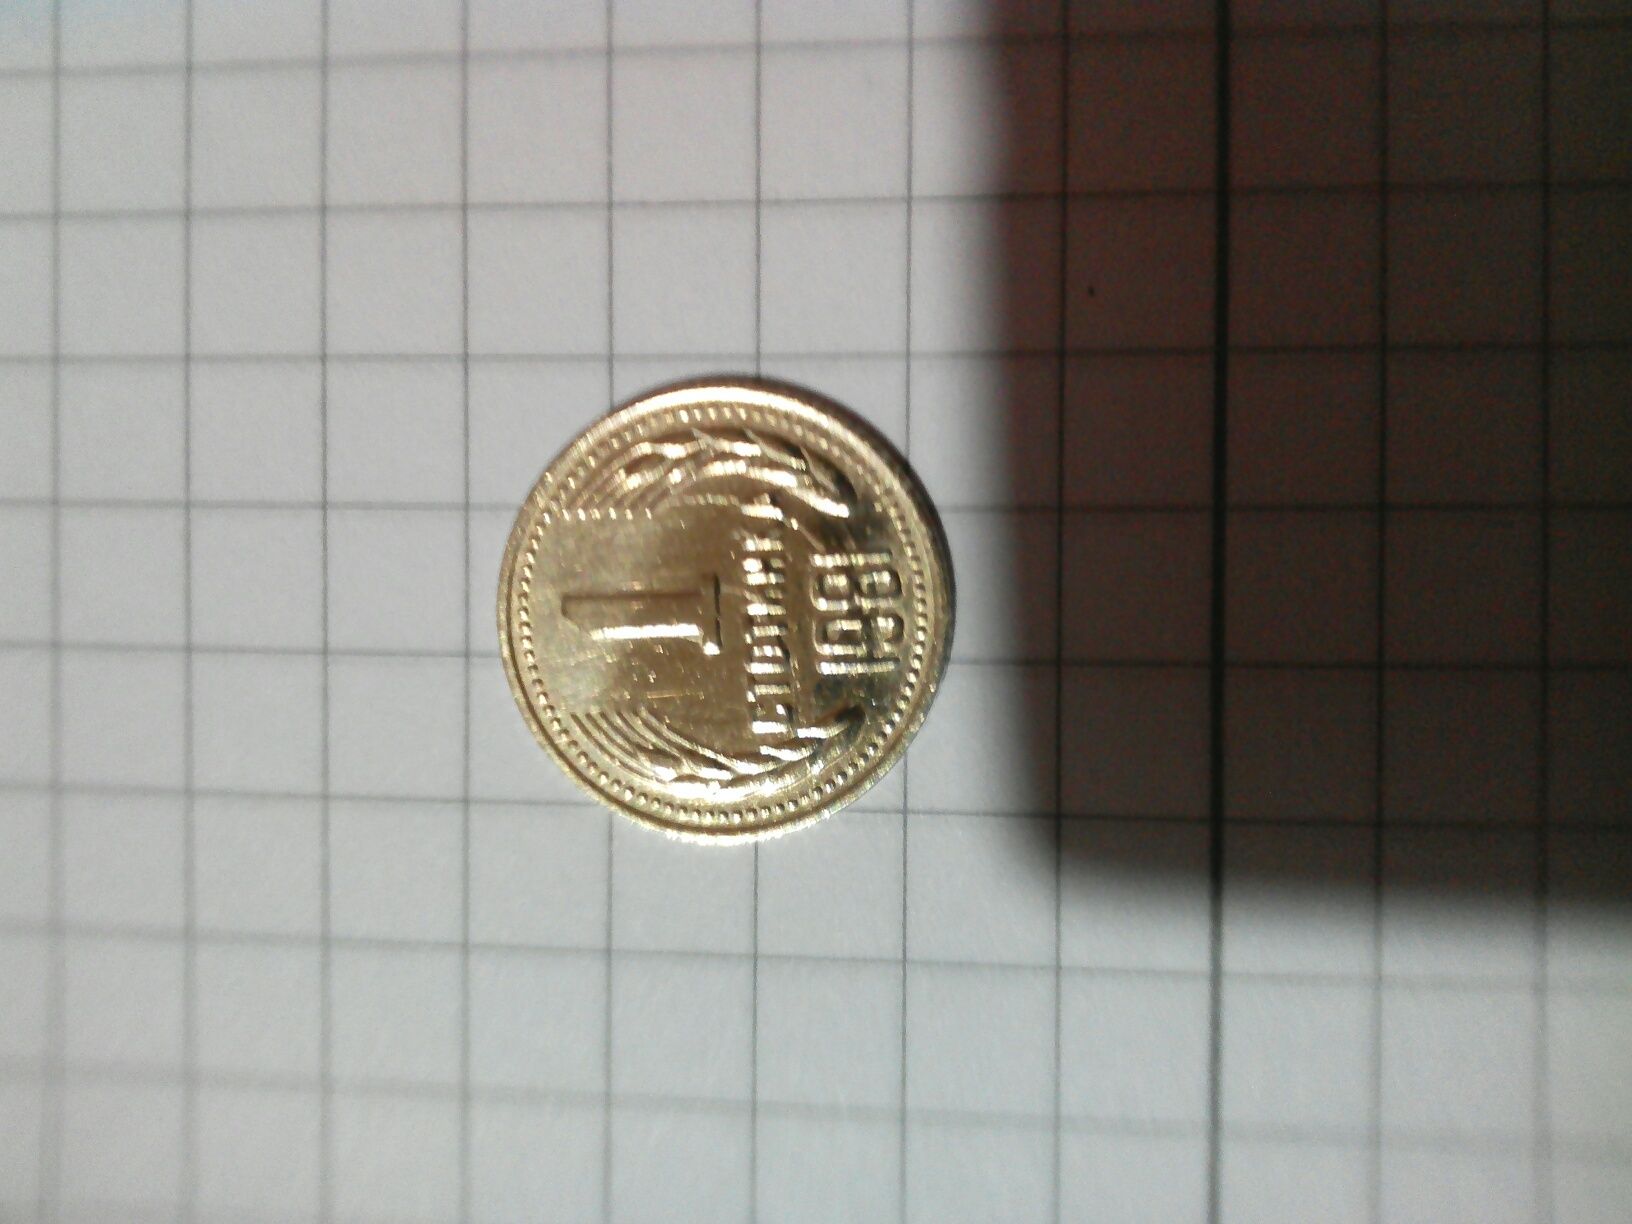 1 стотинка от 1981 година с дефект